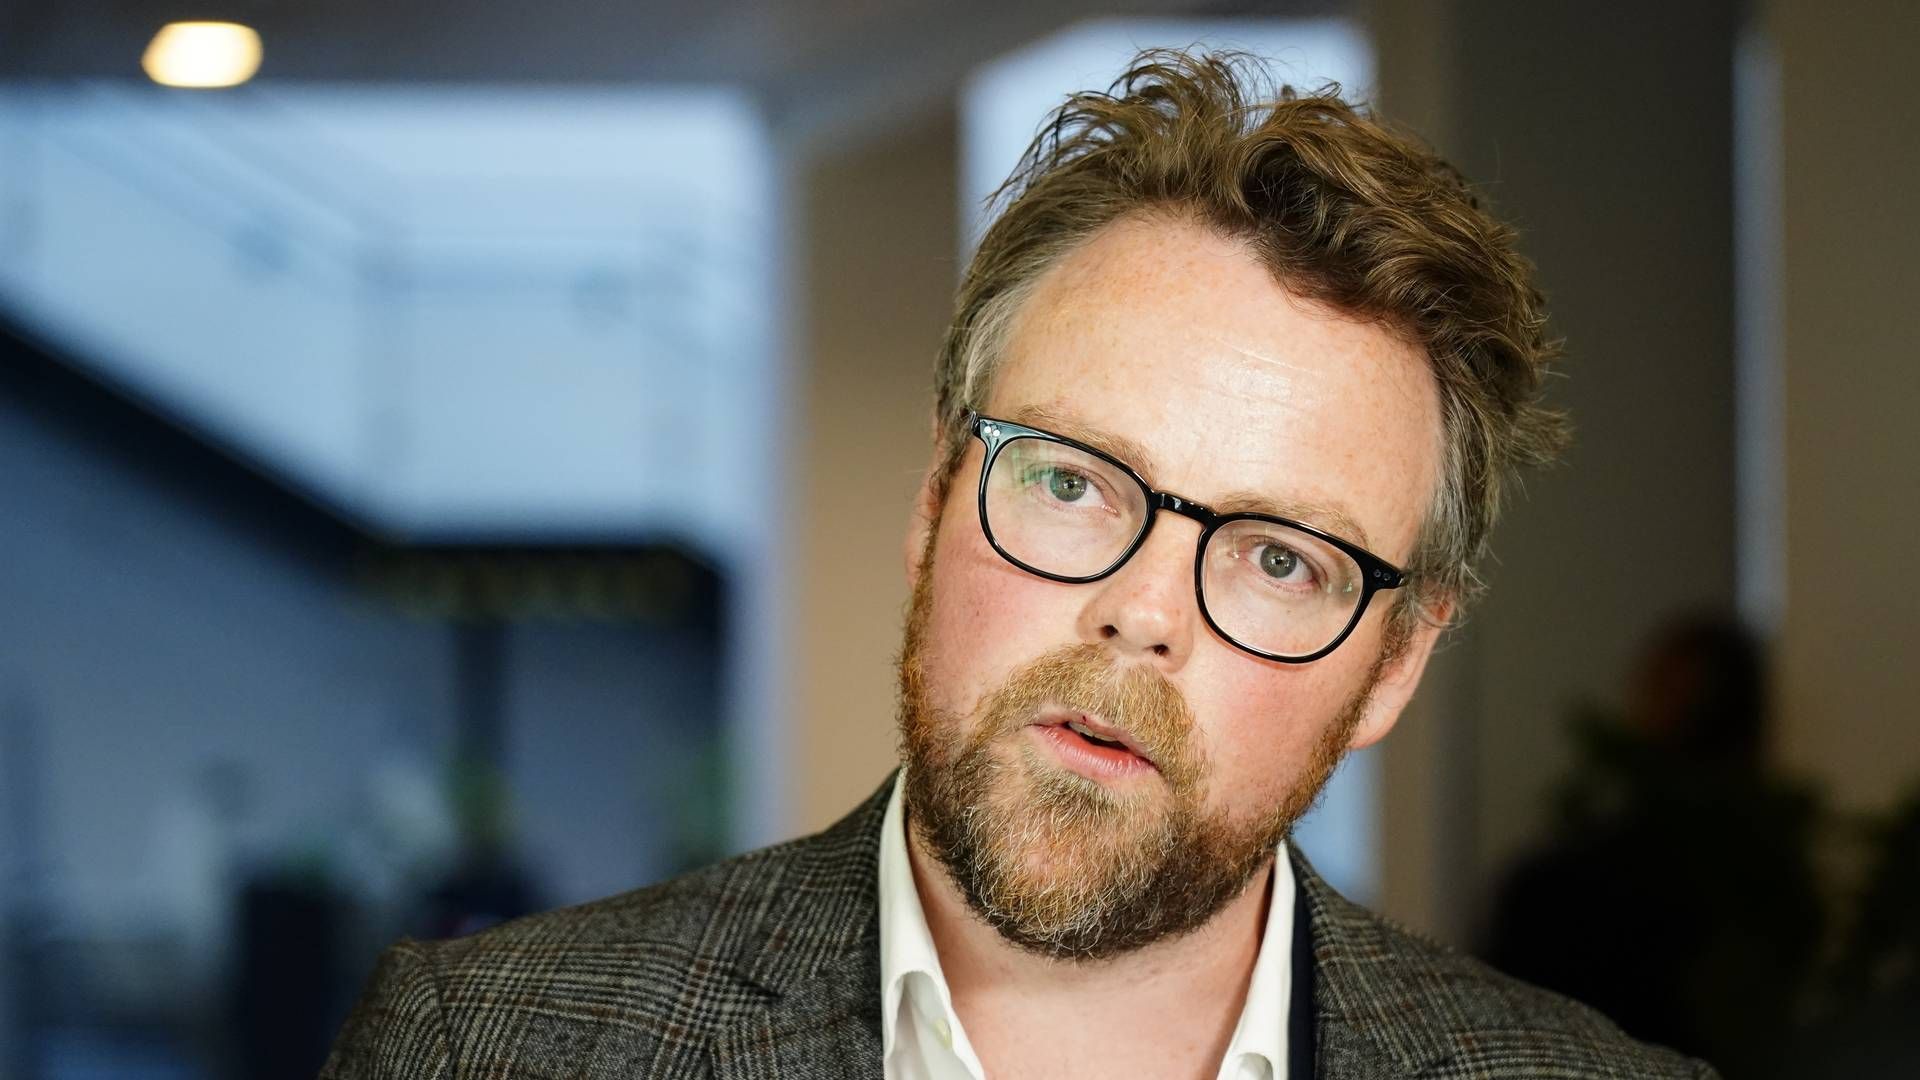 Arbeids- og sosialminister Torbjørn Røe Isaksen | Foto: Håkon Mosvold Larsen/NTB